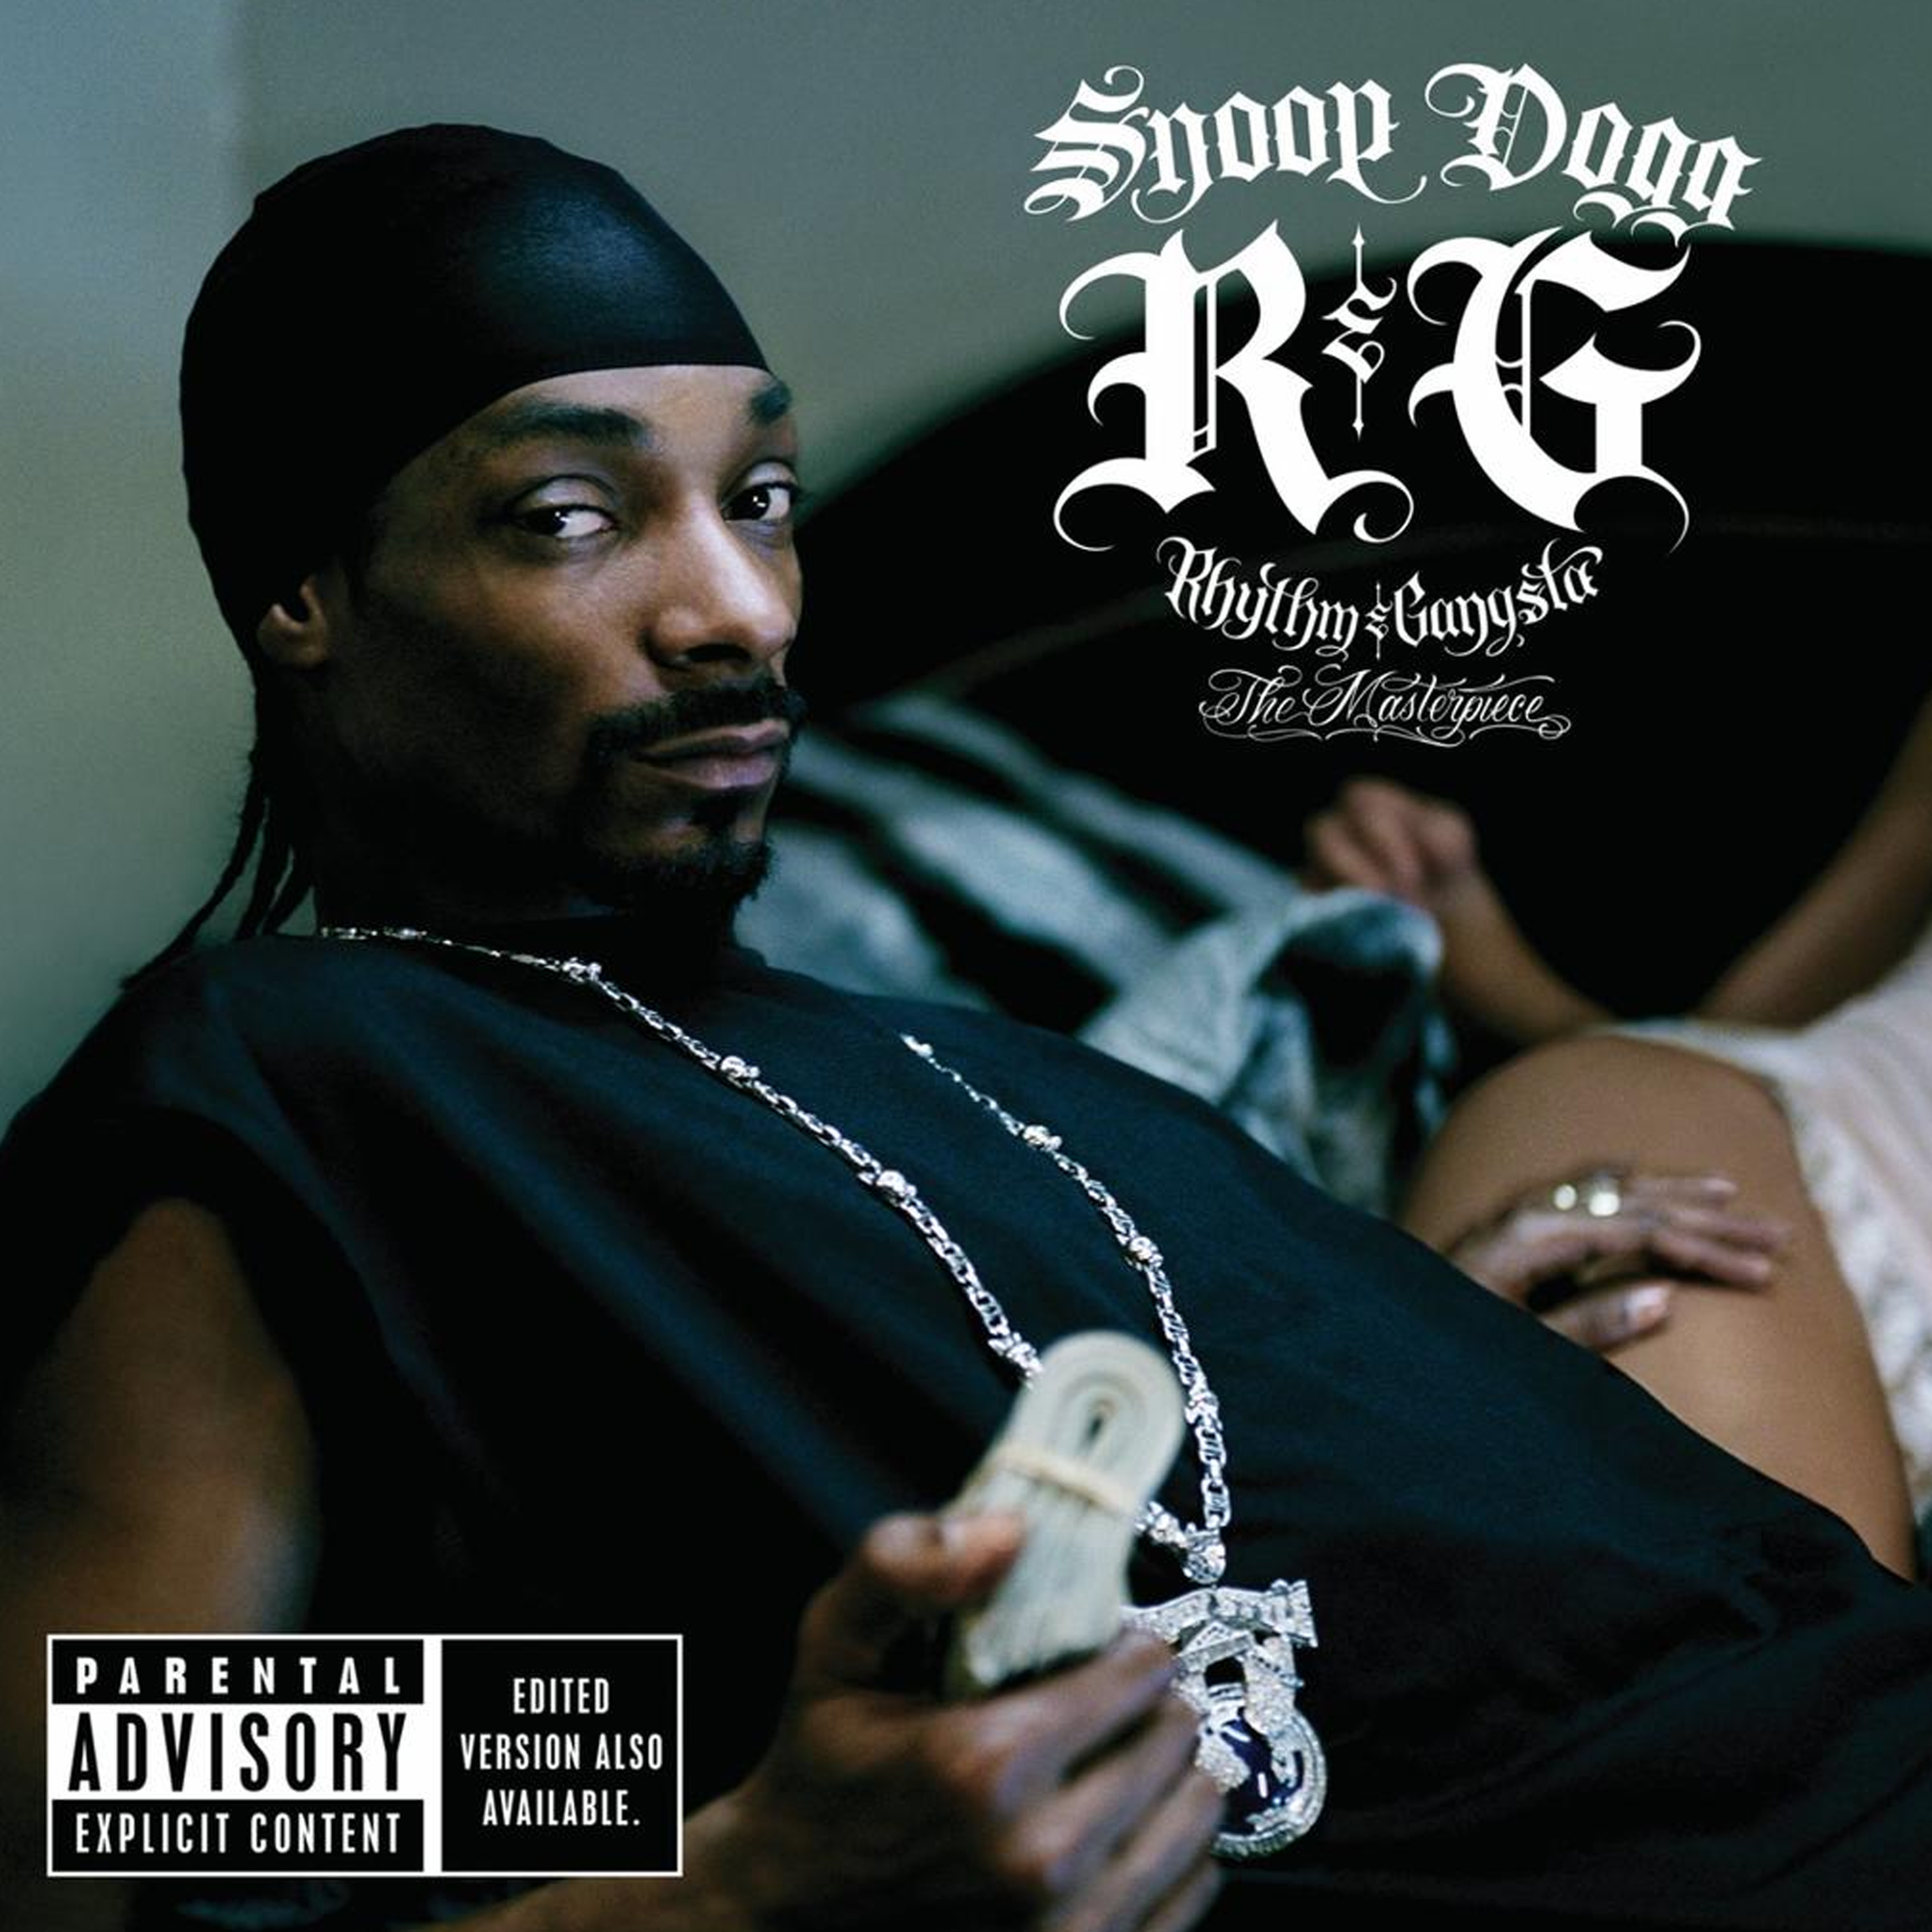 Snoop Dogg - R&G (Rhythm & Gangsta): The Masterpiece - CD